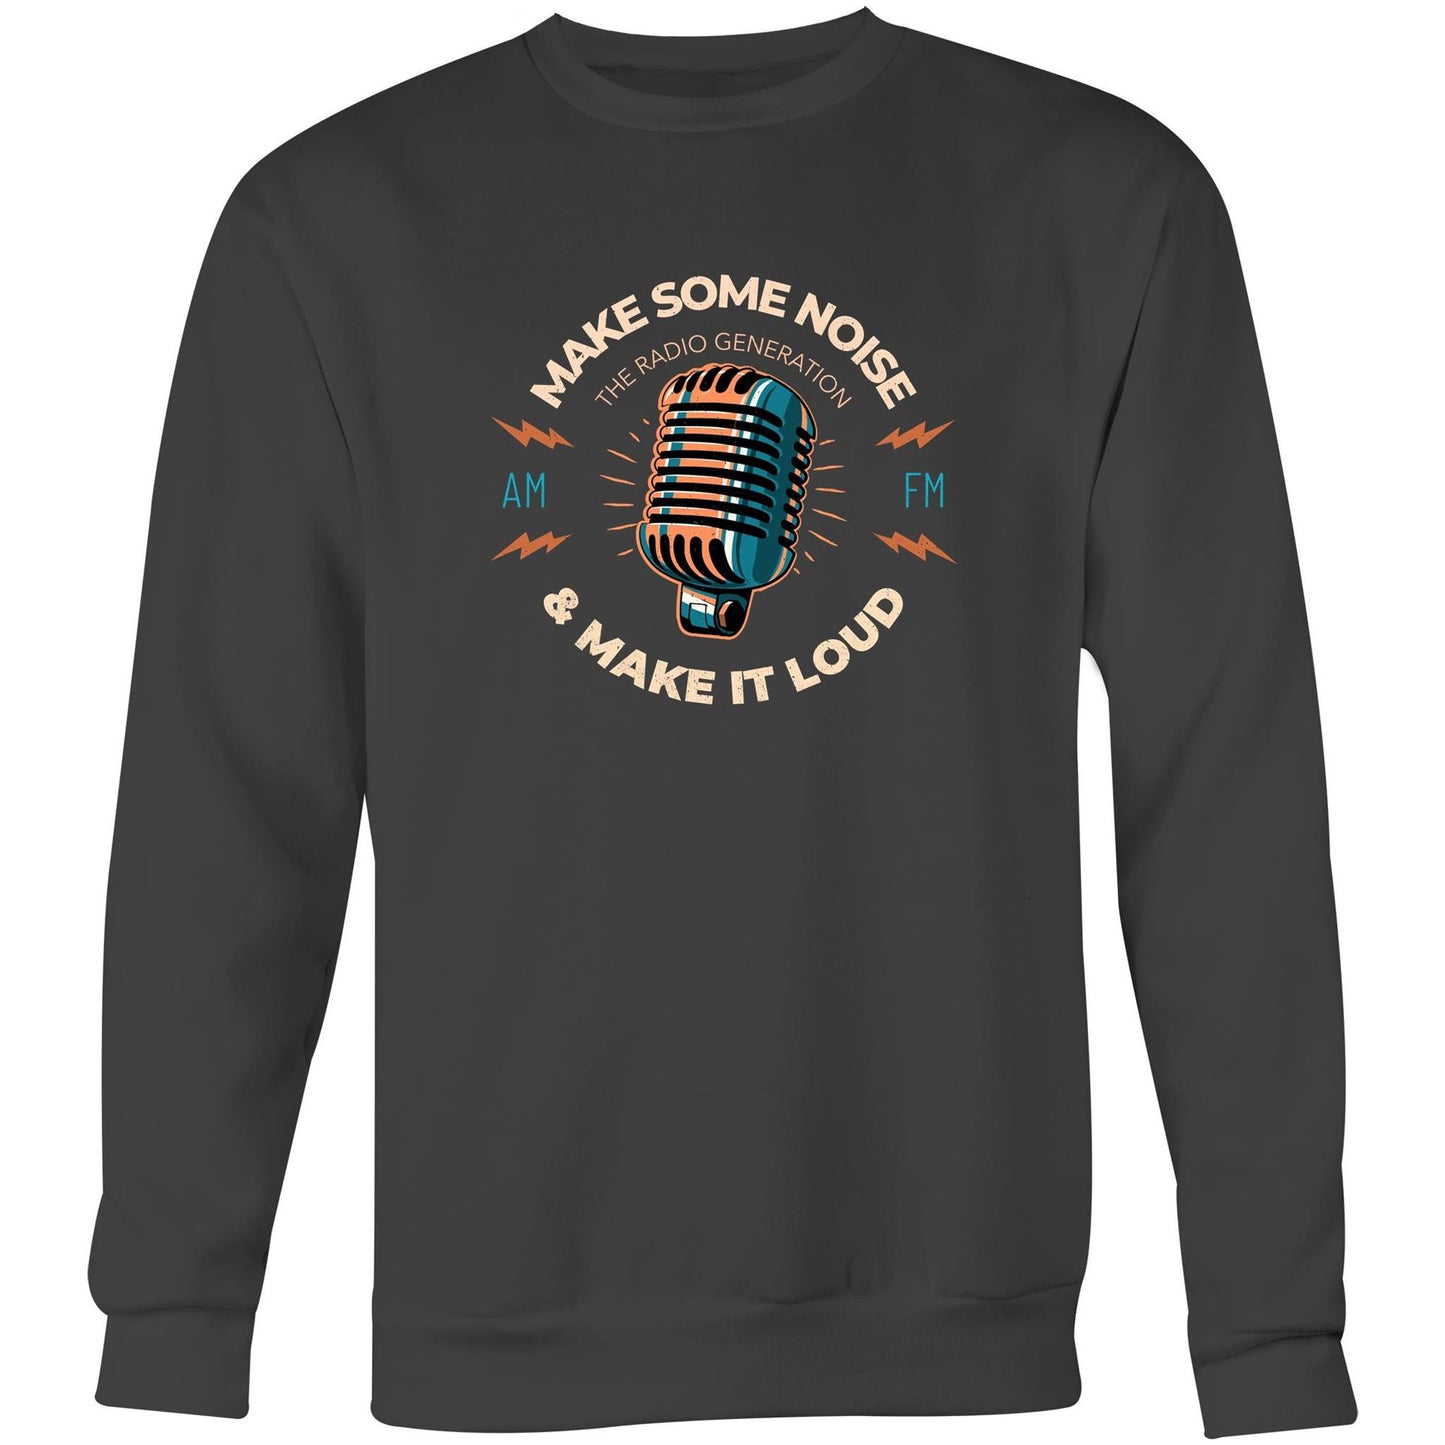 Make Some Noise And Make It Loud - Crew Sweatshirt Coal Sweatshirt Music